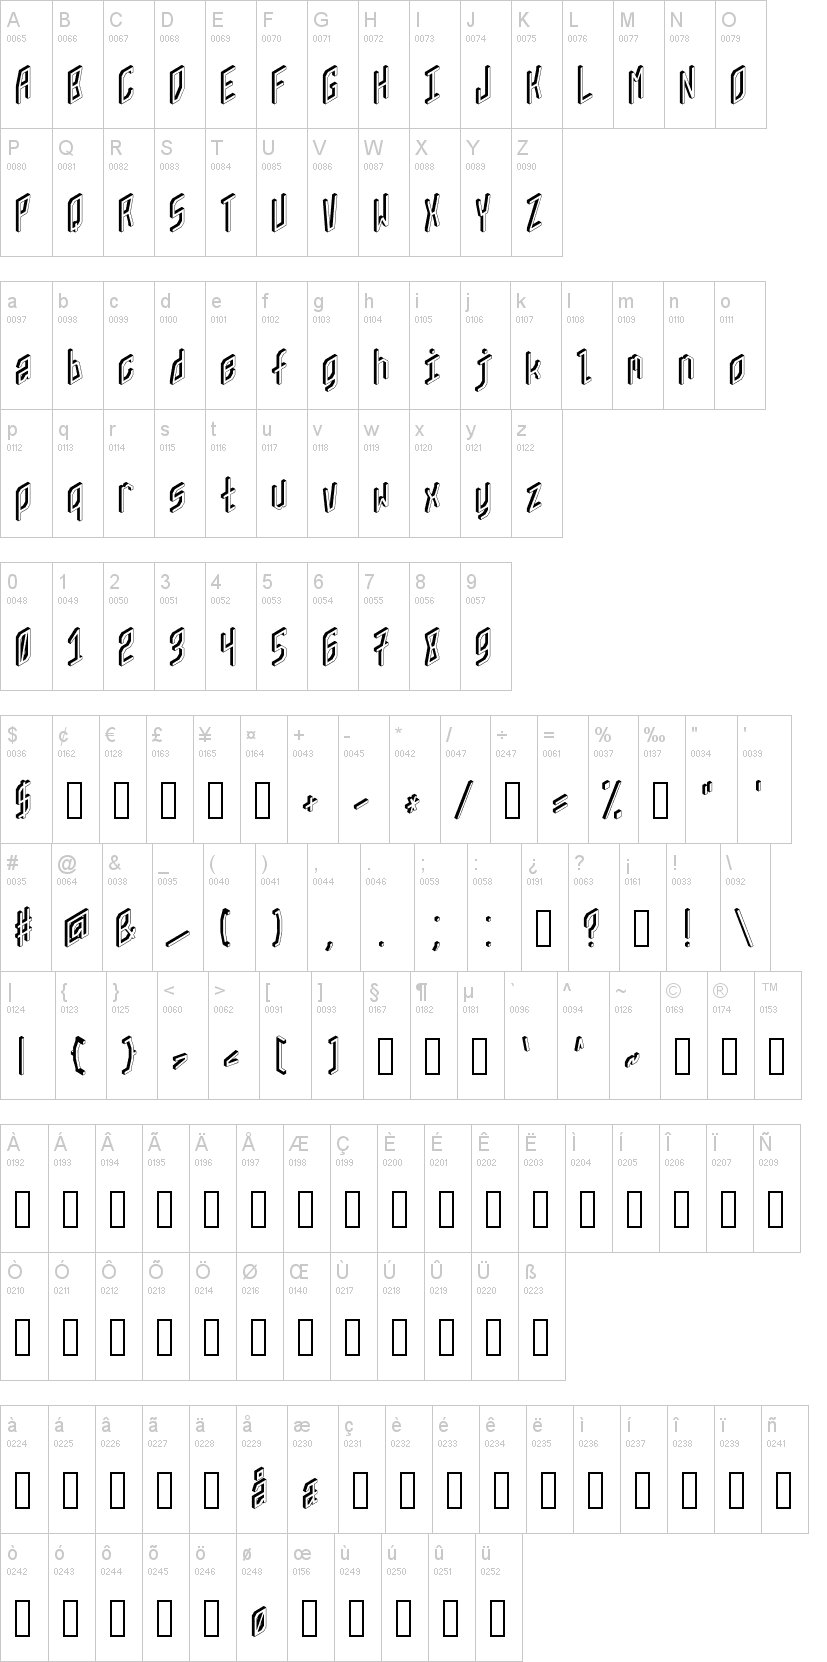 ZX80 Font | dafont.com